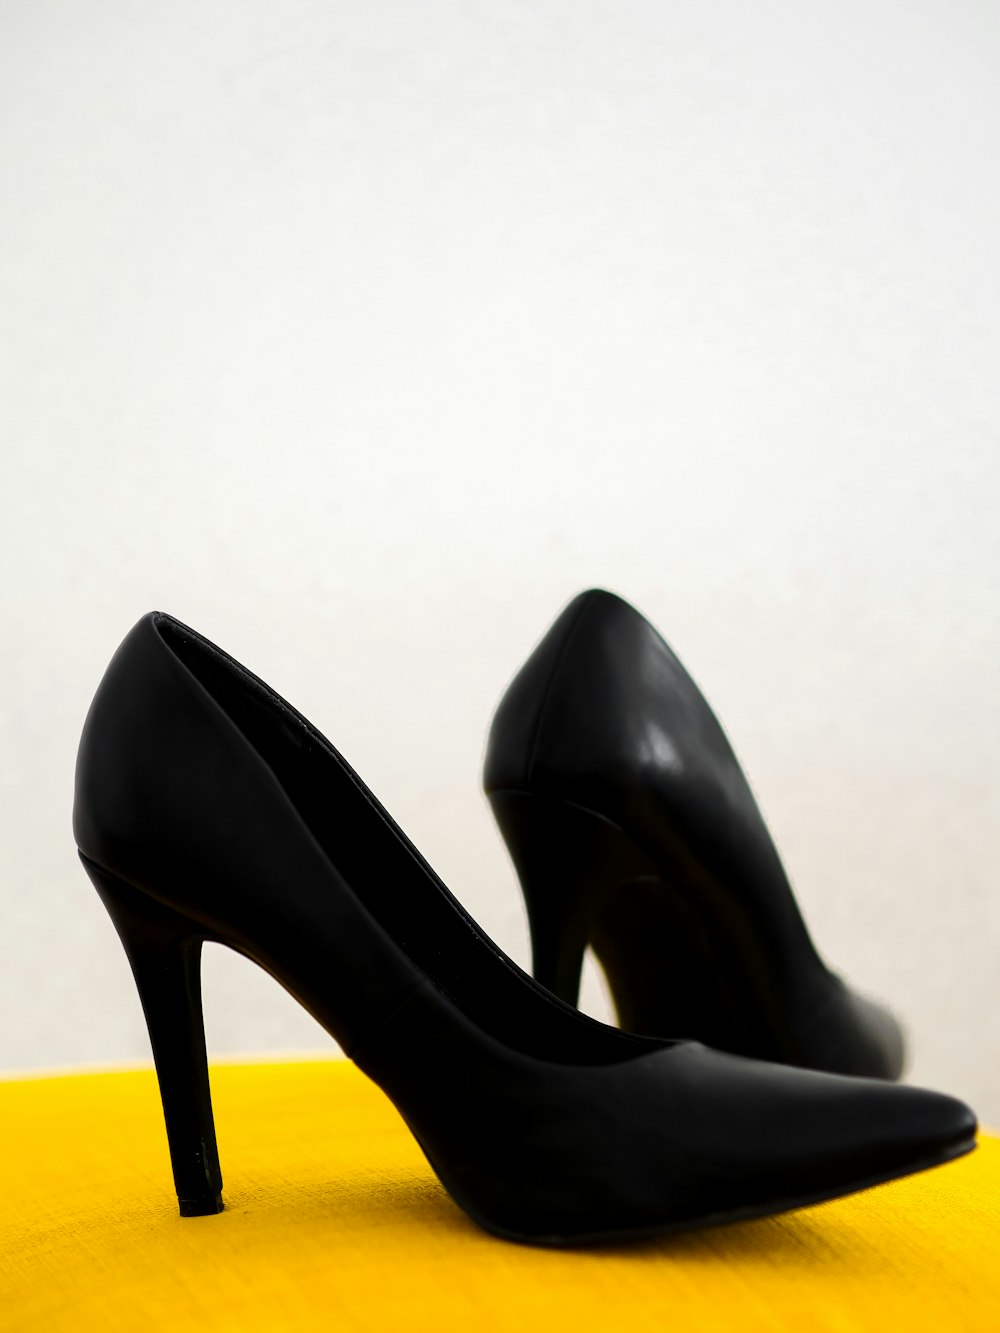 zapatos de tacón de cuero negro sobre silla amarilla